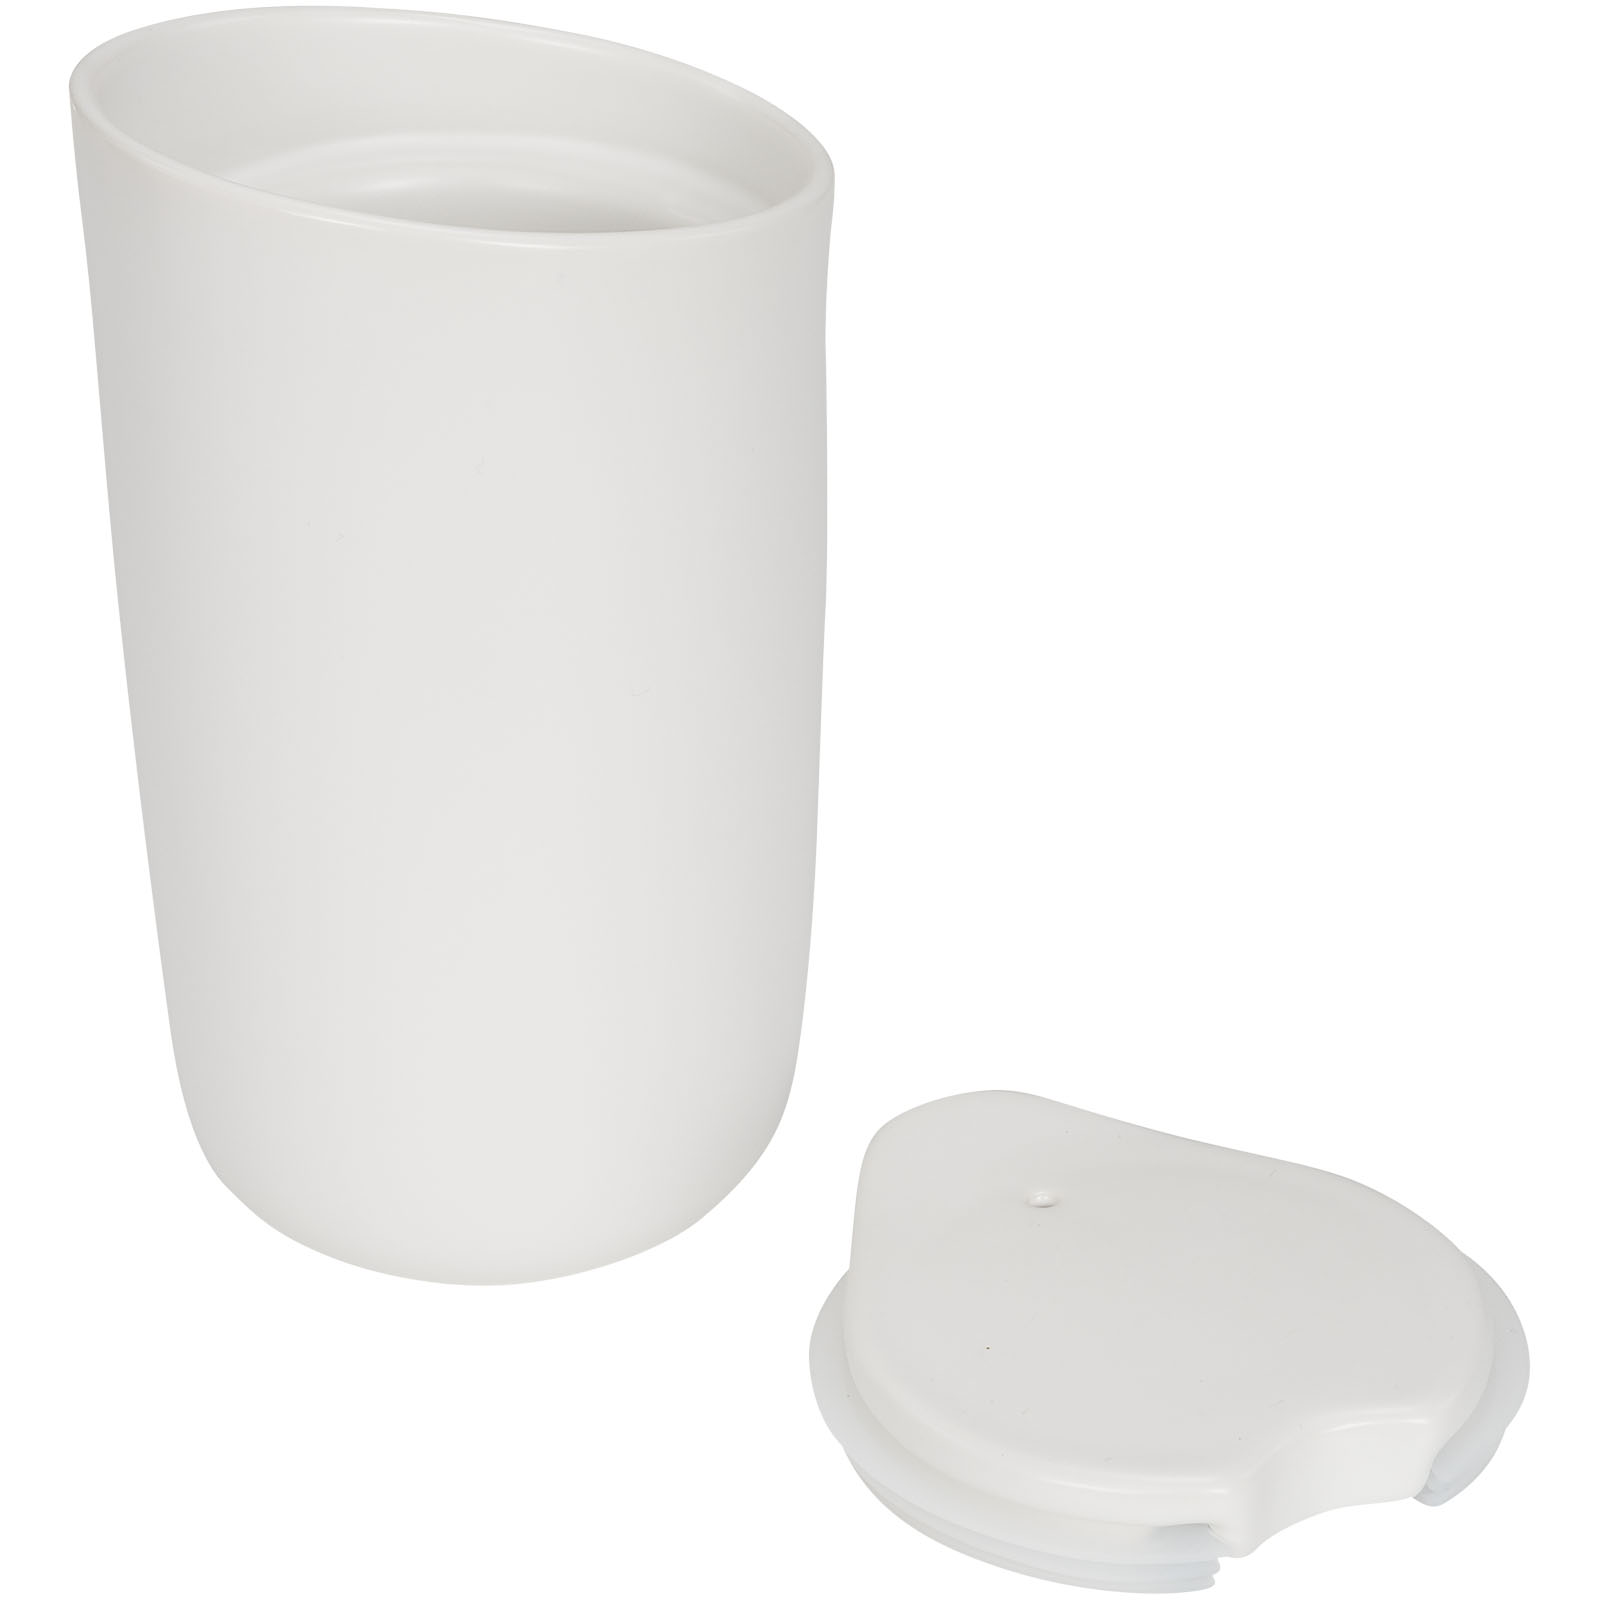 Advertising Travel mugs - Mysa 410 ml double-walled ceramic tumbler - 3